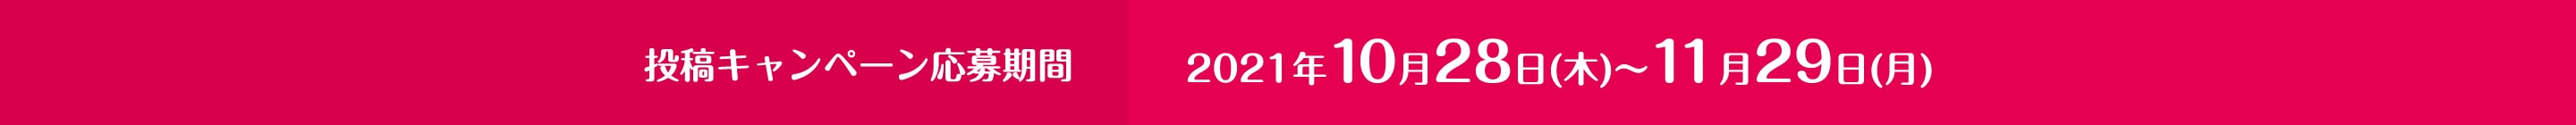 投稿キャンペーン応募期間 2021年10/28(木)~11/29(月)